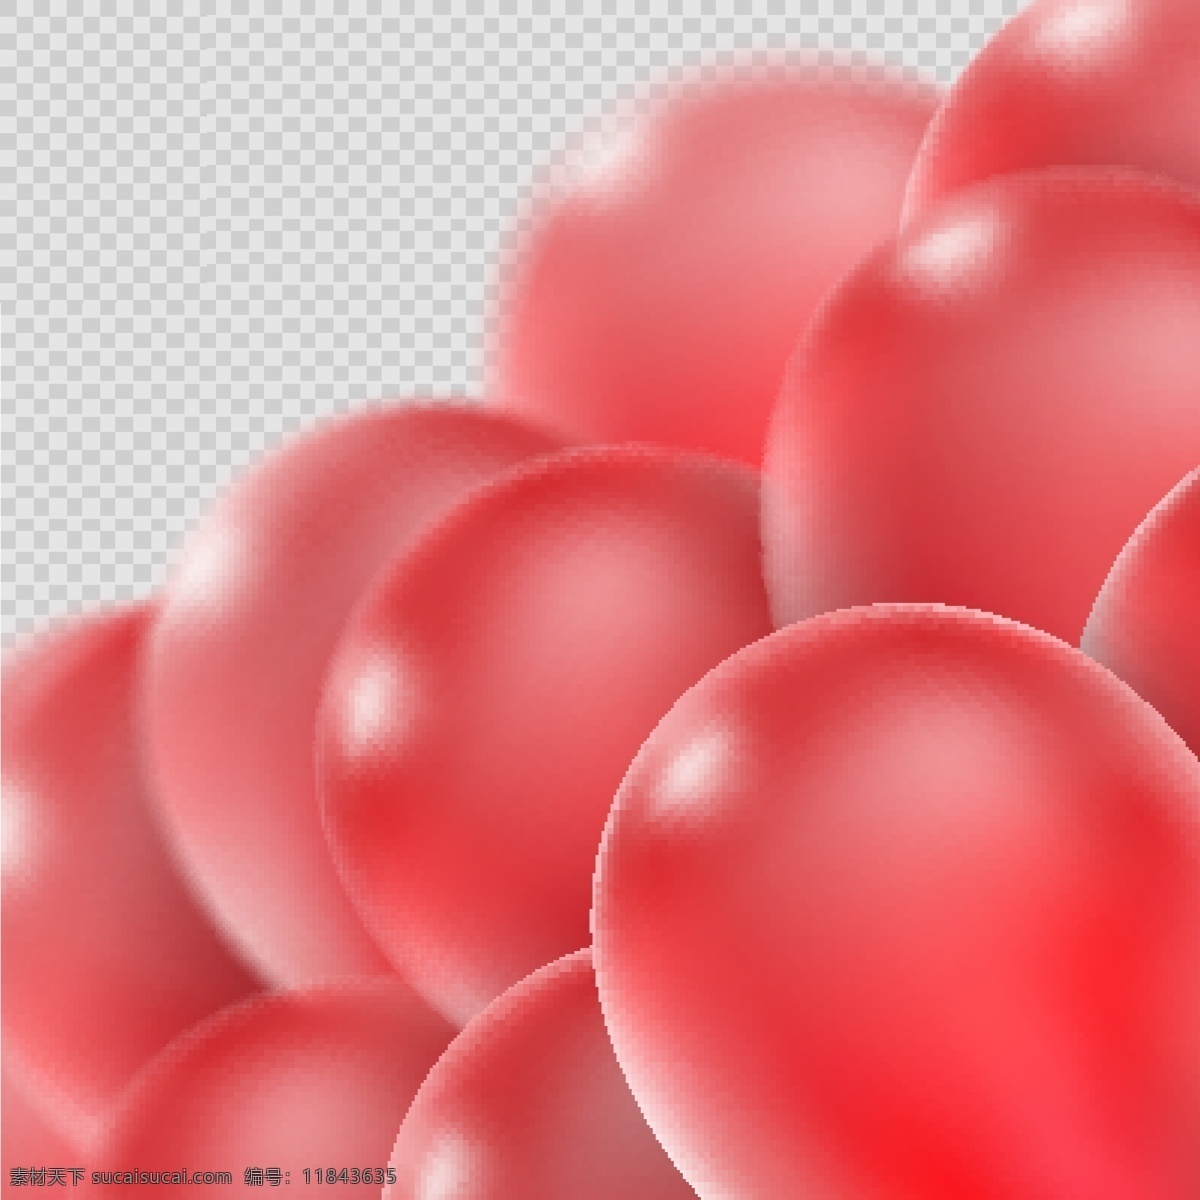 美丽 红色 气球 矢量 立体气球 红色气球 节日素材 庆祝 装饰 元素卡通 气球气球 背景 创意背景 抽象背景 底纹背景 粉色